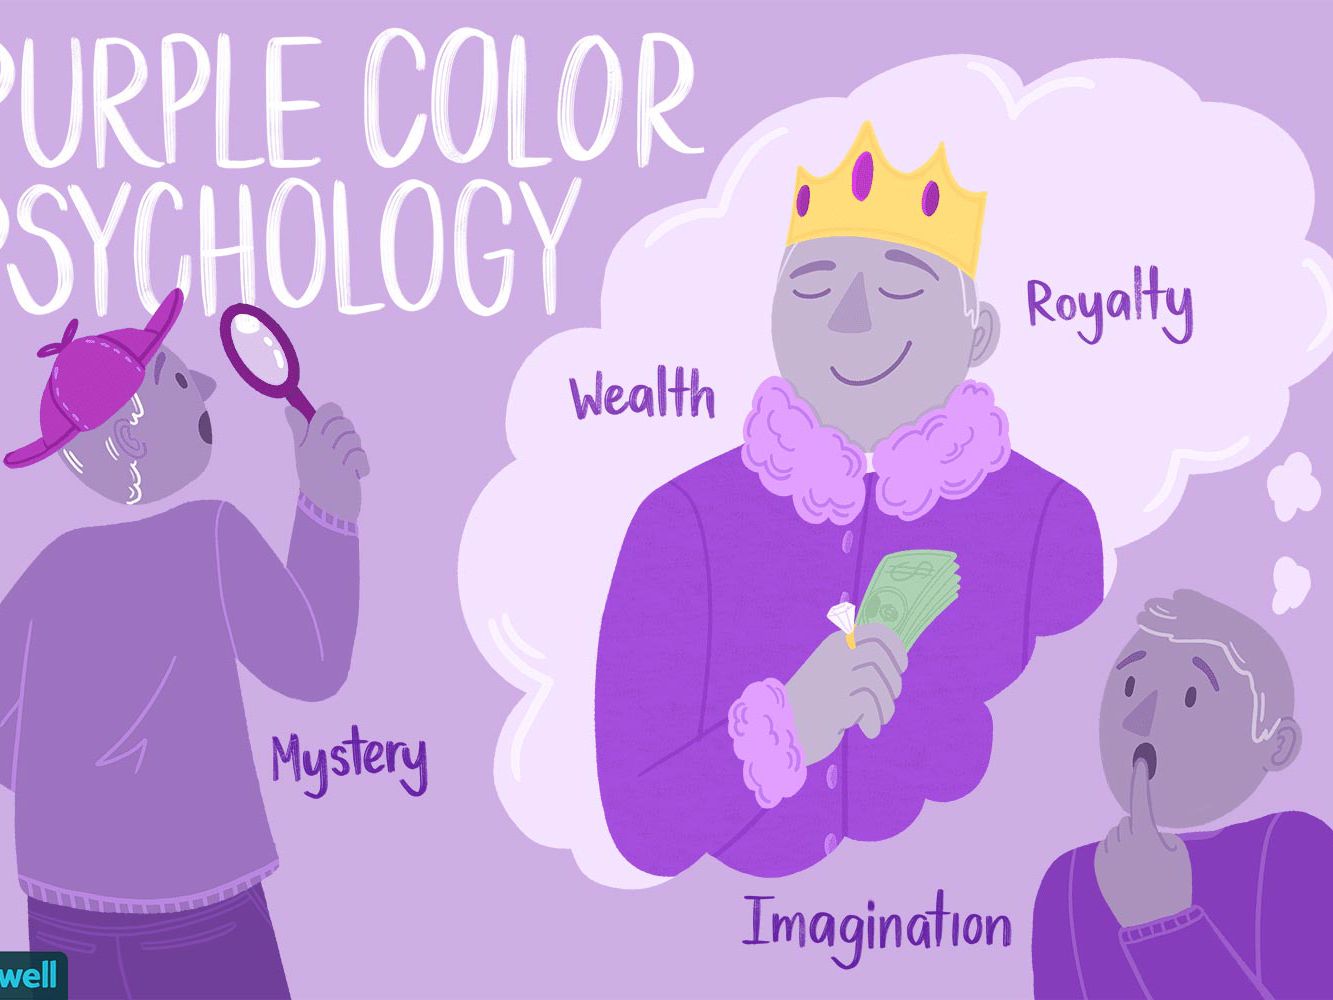 معاني الألوان في علم النفس .. لونك المفضل يقول الكثير عن شخصيك ..